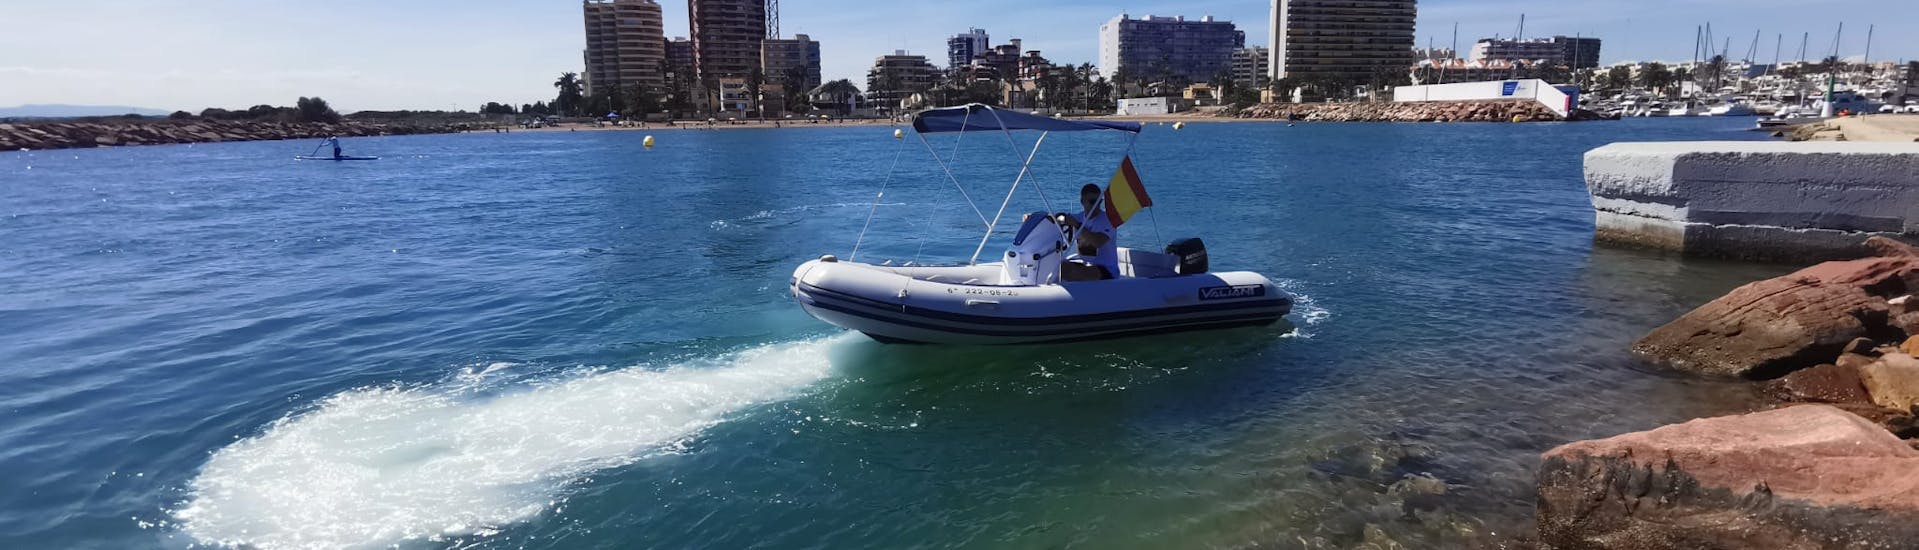 RIB Bootsverleih in La Pobla de Farnals, Valencia (bis zu 7 Pax.) ohne Führerschein.